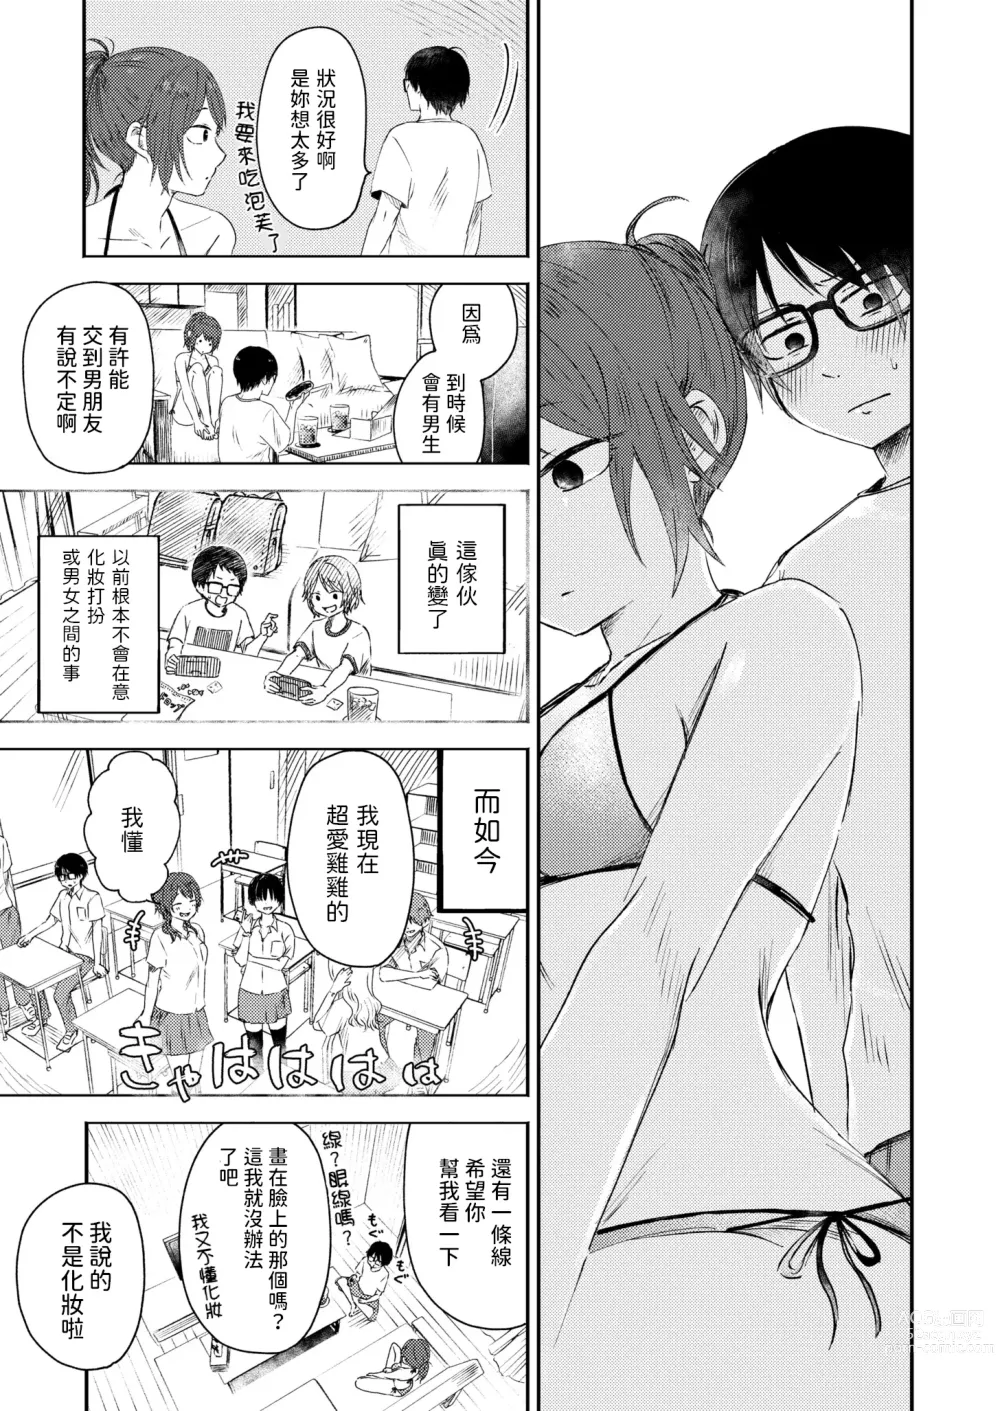 Page 7 of manga Toshigoro no Eyeline